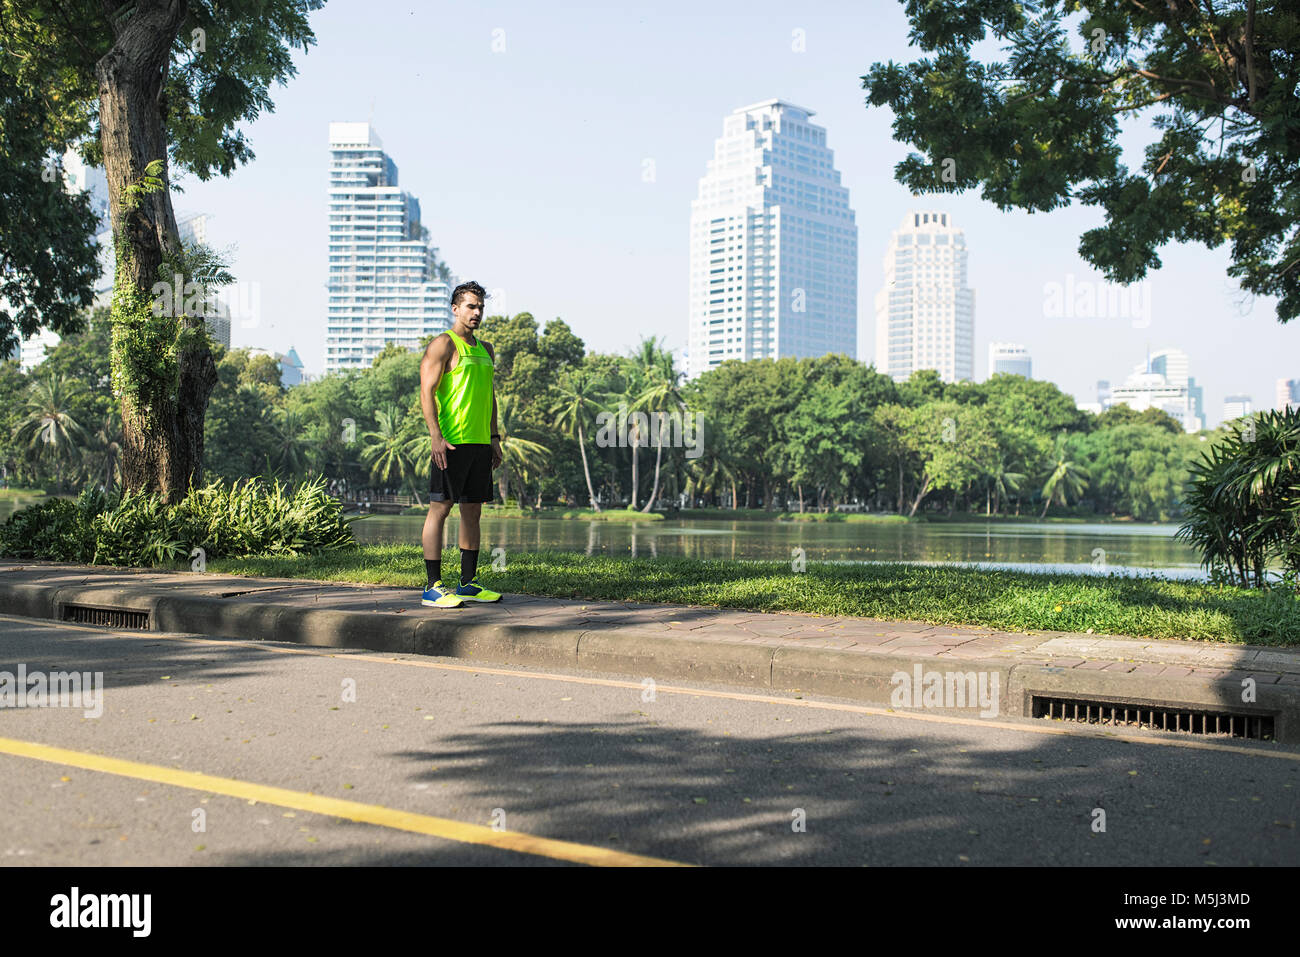 Runner training on street in urban park Stock Photo